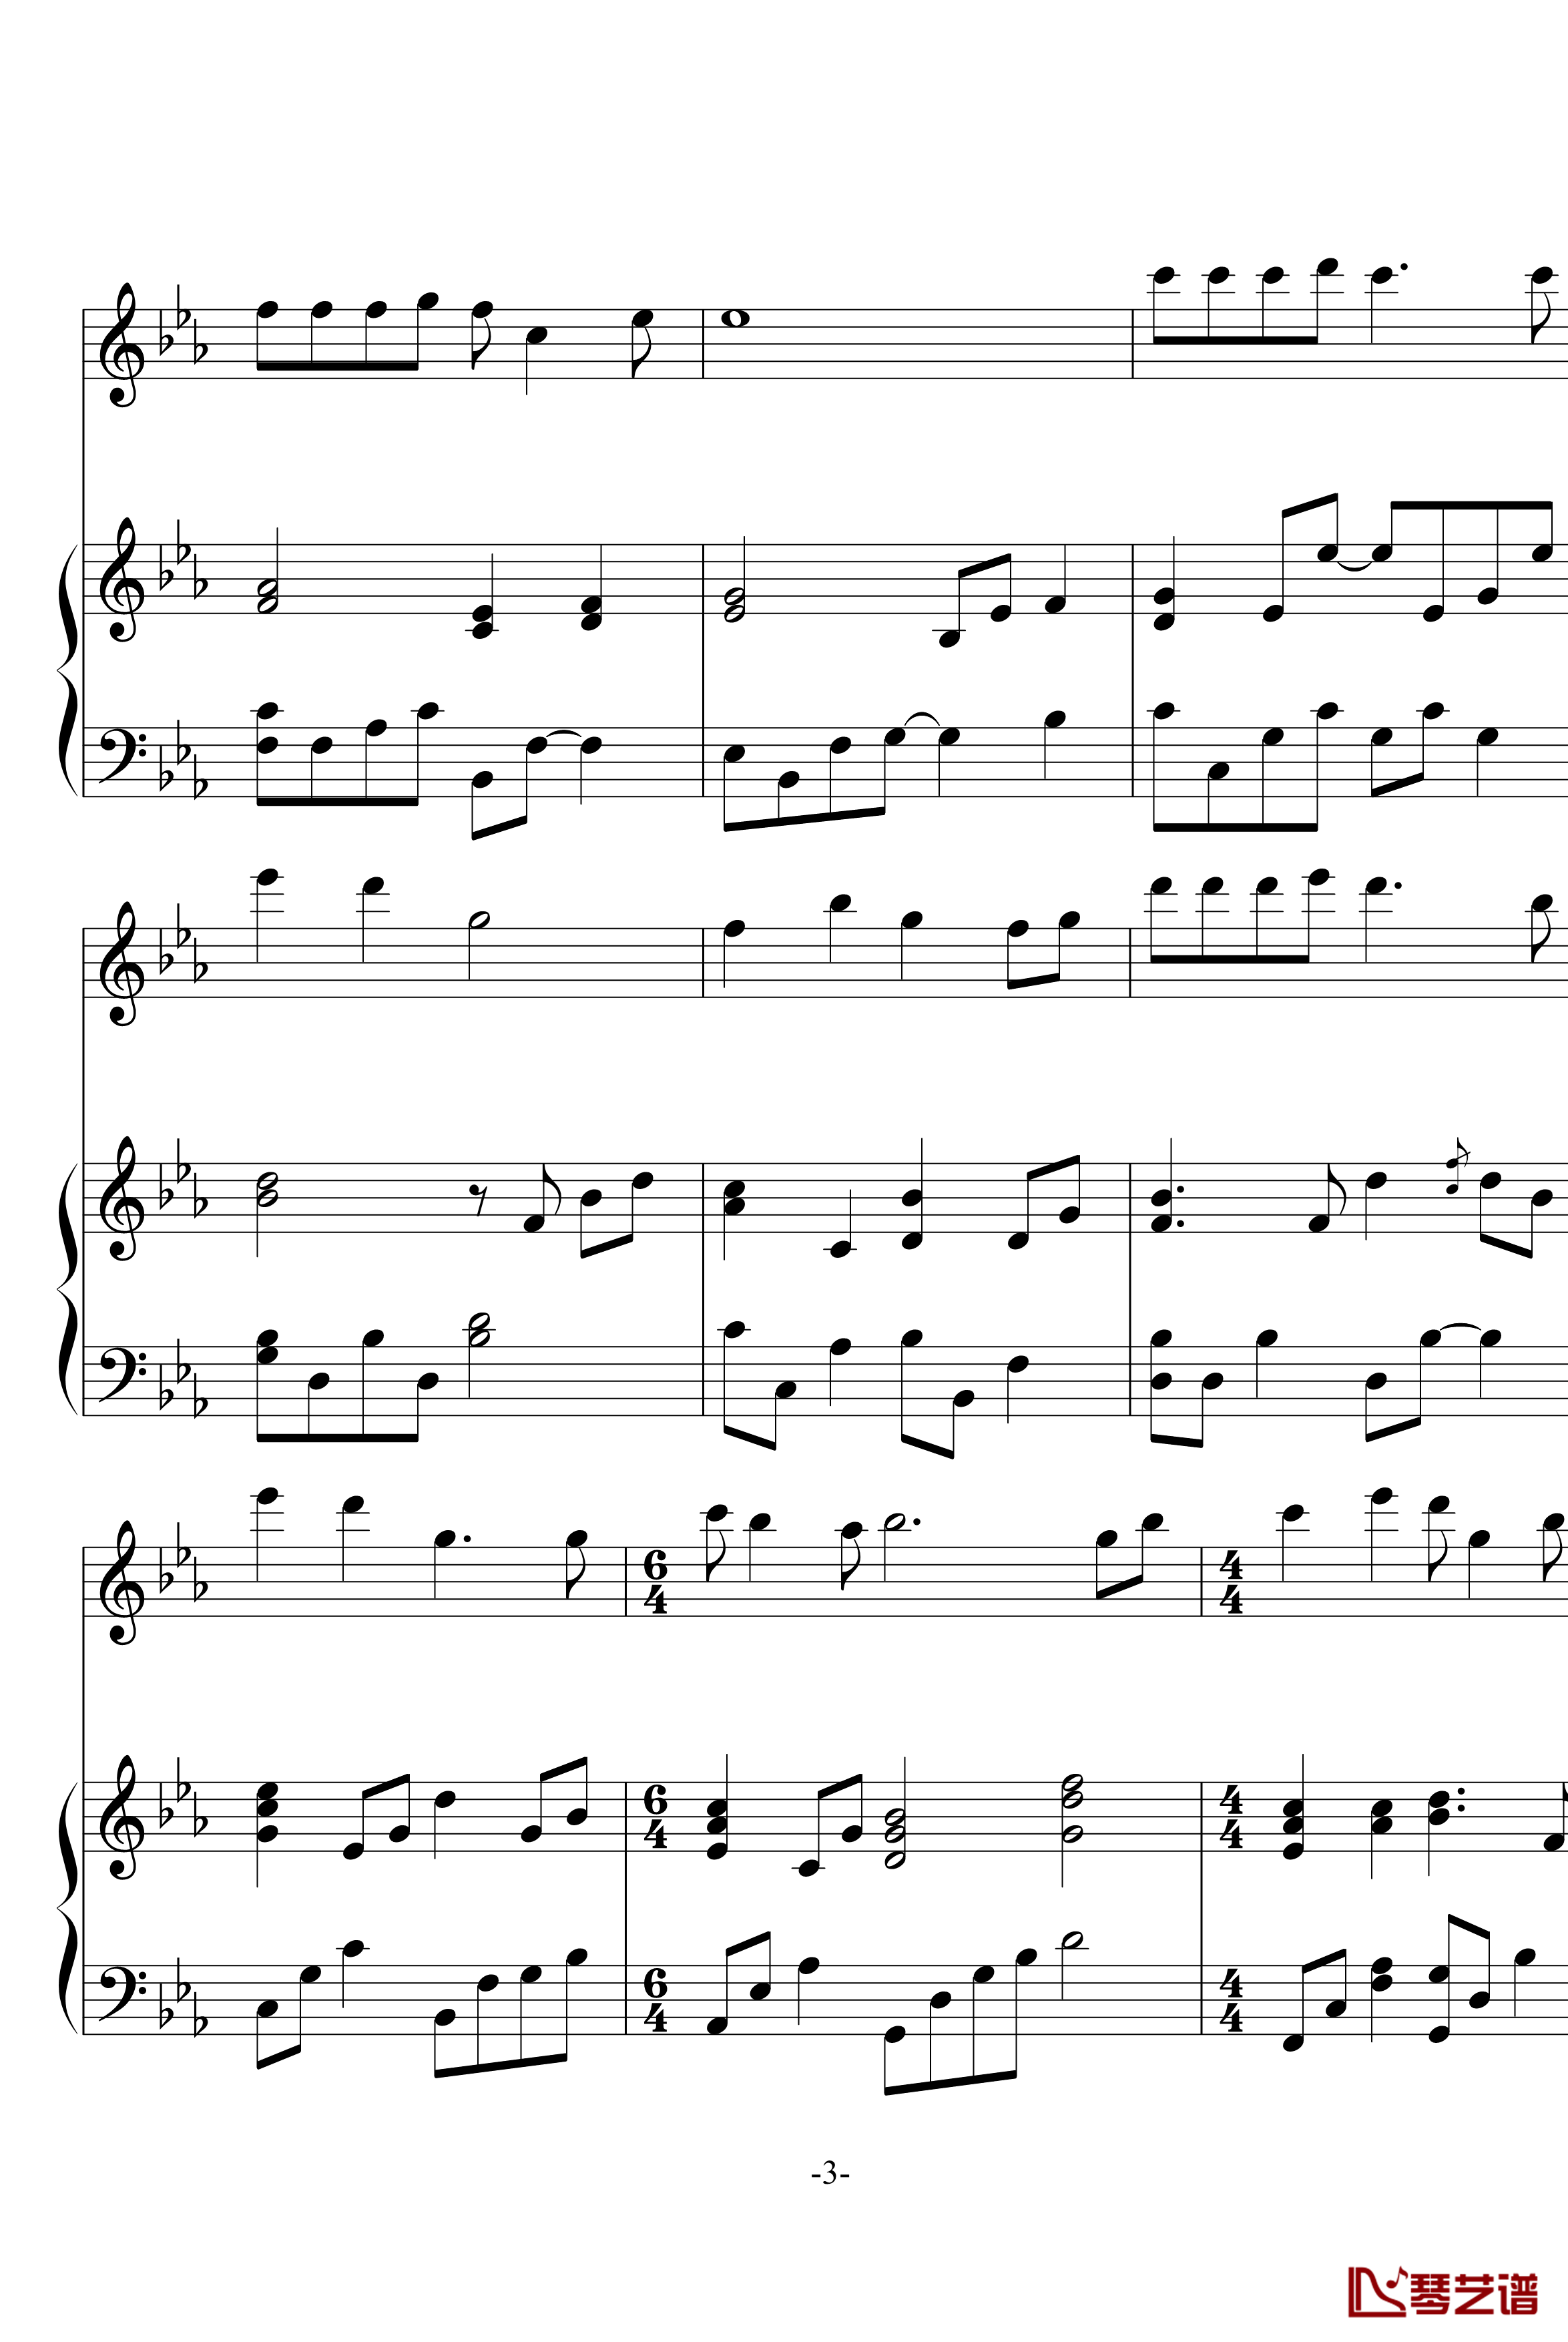 幽灵公主笛子与钢琴钢琴谱-OST-久石让3